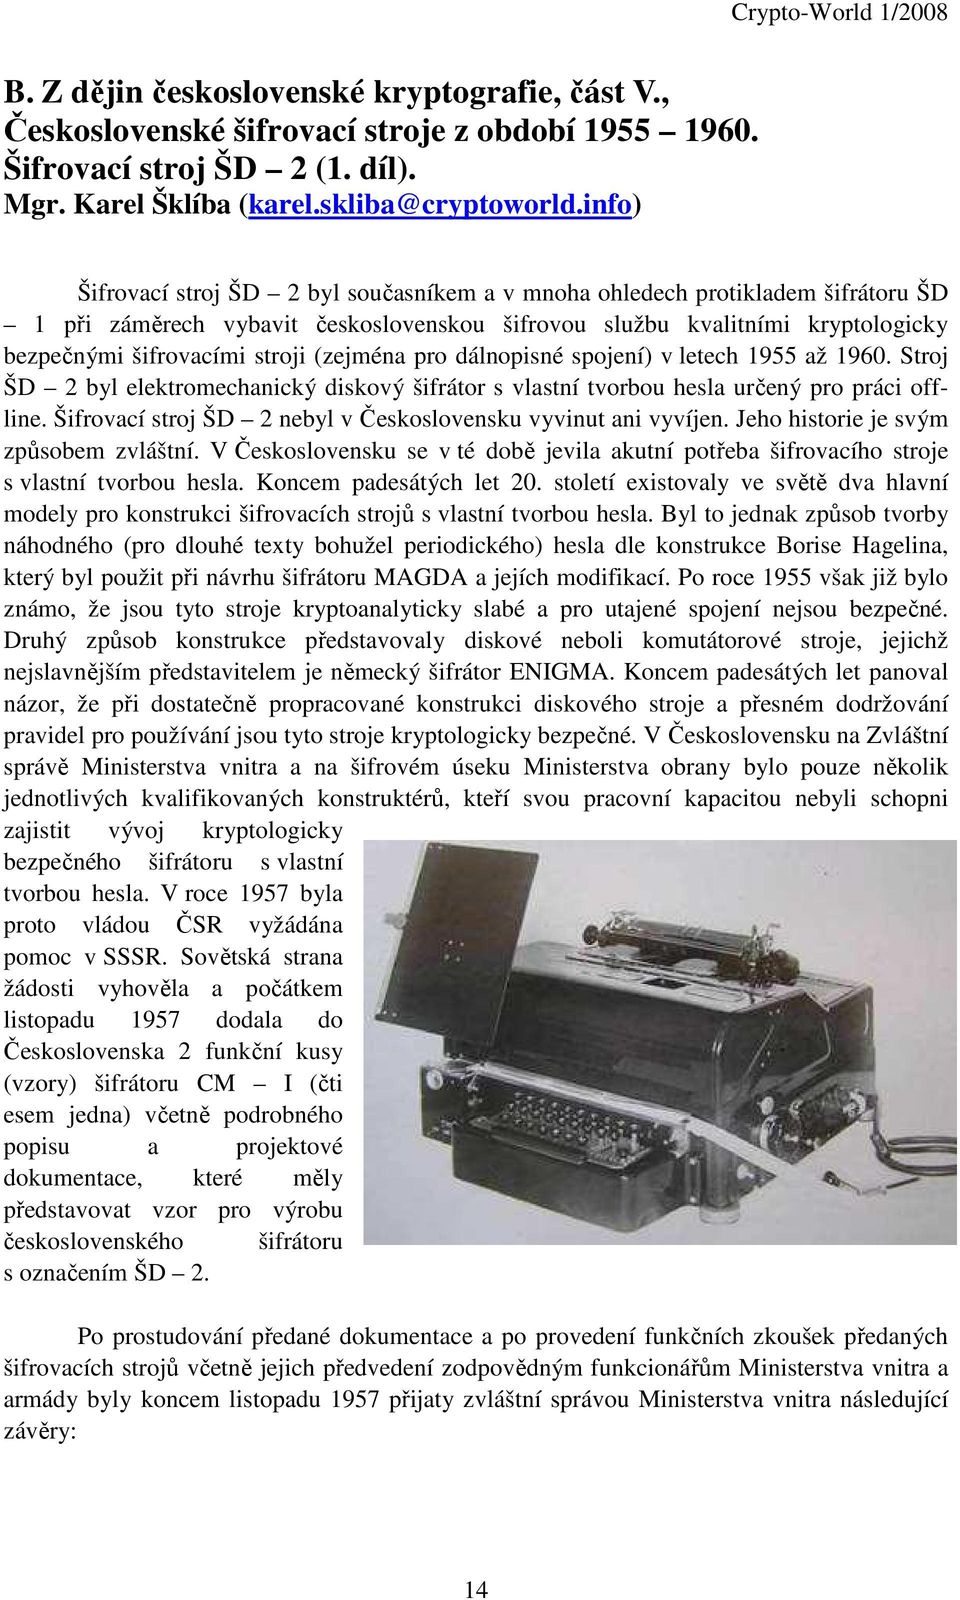 dálnopisné spojení v letech 955 ž 96. Stroj ŠD byl elektromechnický diskový šifrátor s vlstní tvorbou hesl určený pro práci offline. Šifrovcí stroj ŠD nebyl v Československu vyvinut ni vyvíjen.